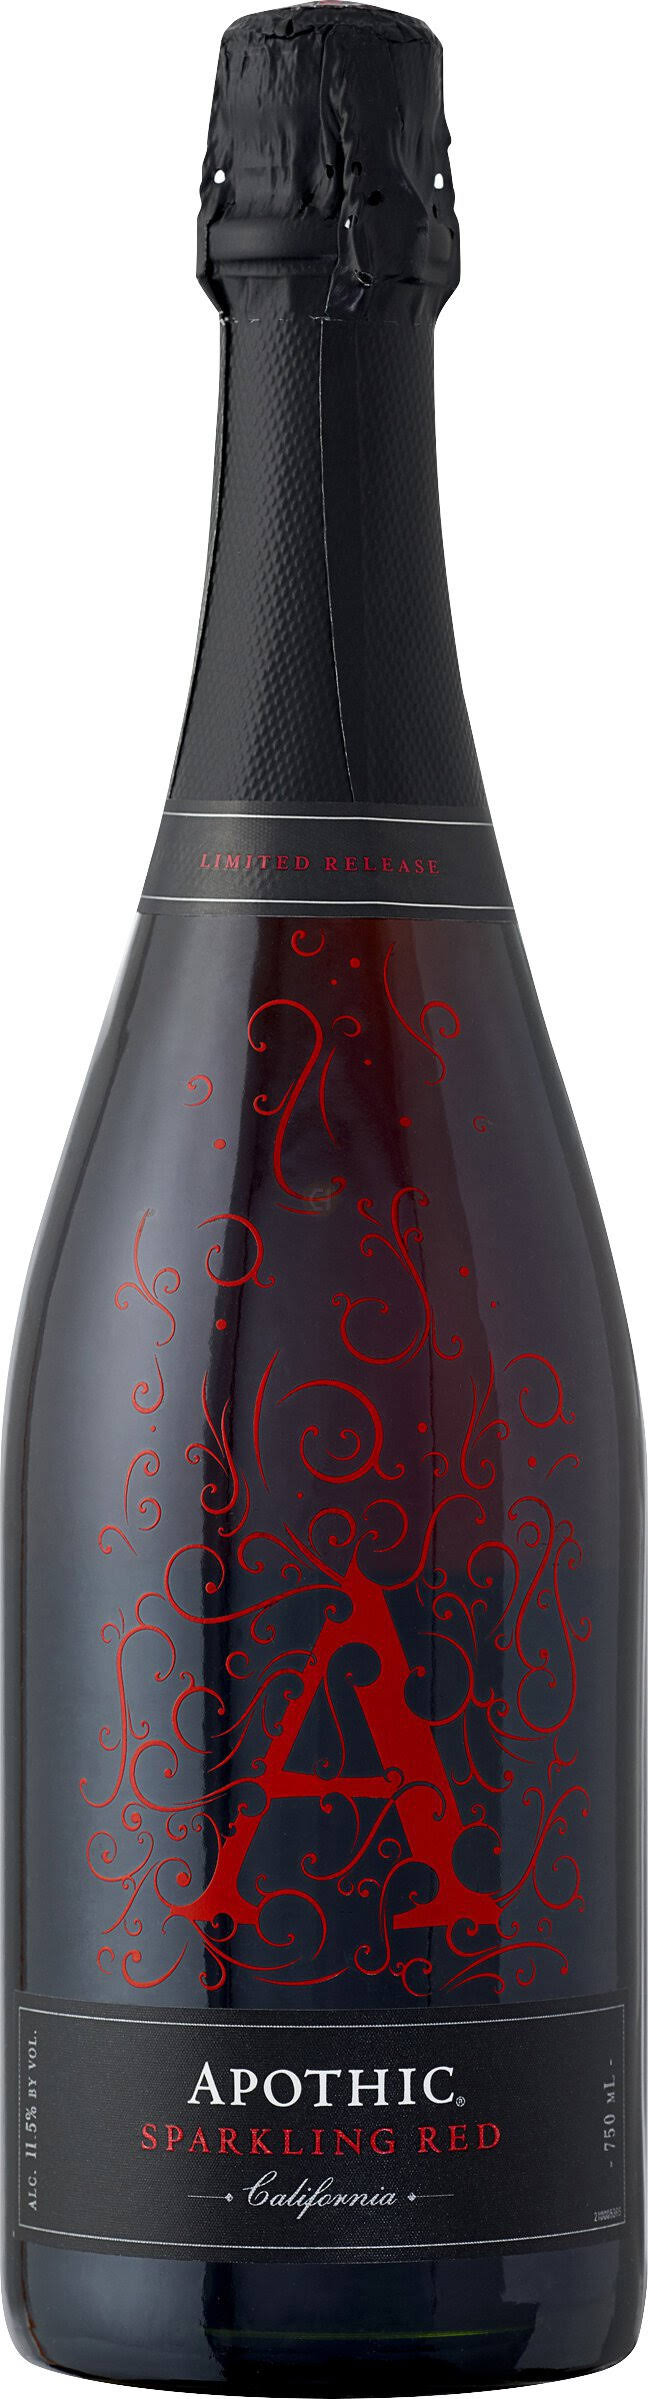 Apothic Sparkling Red, California - 750 ml